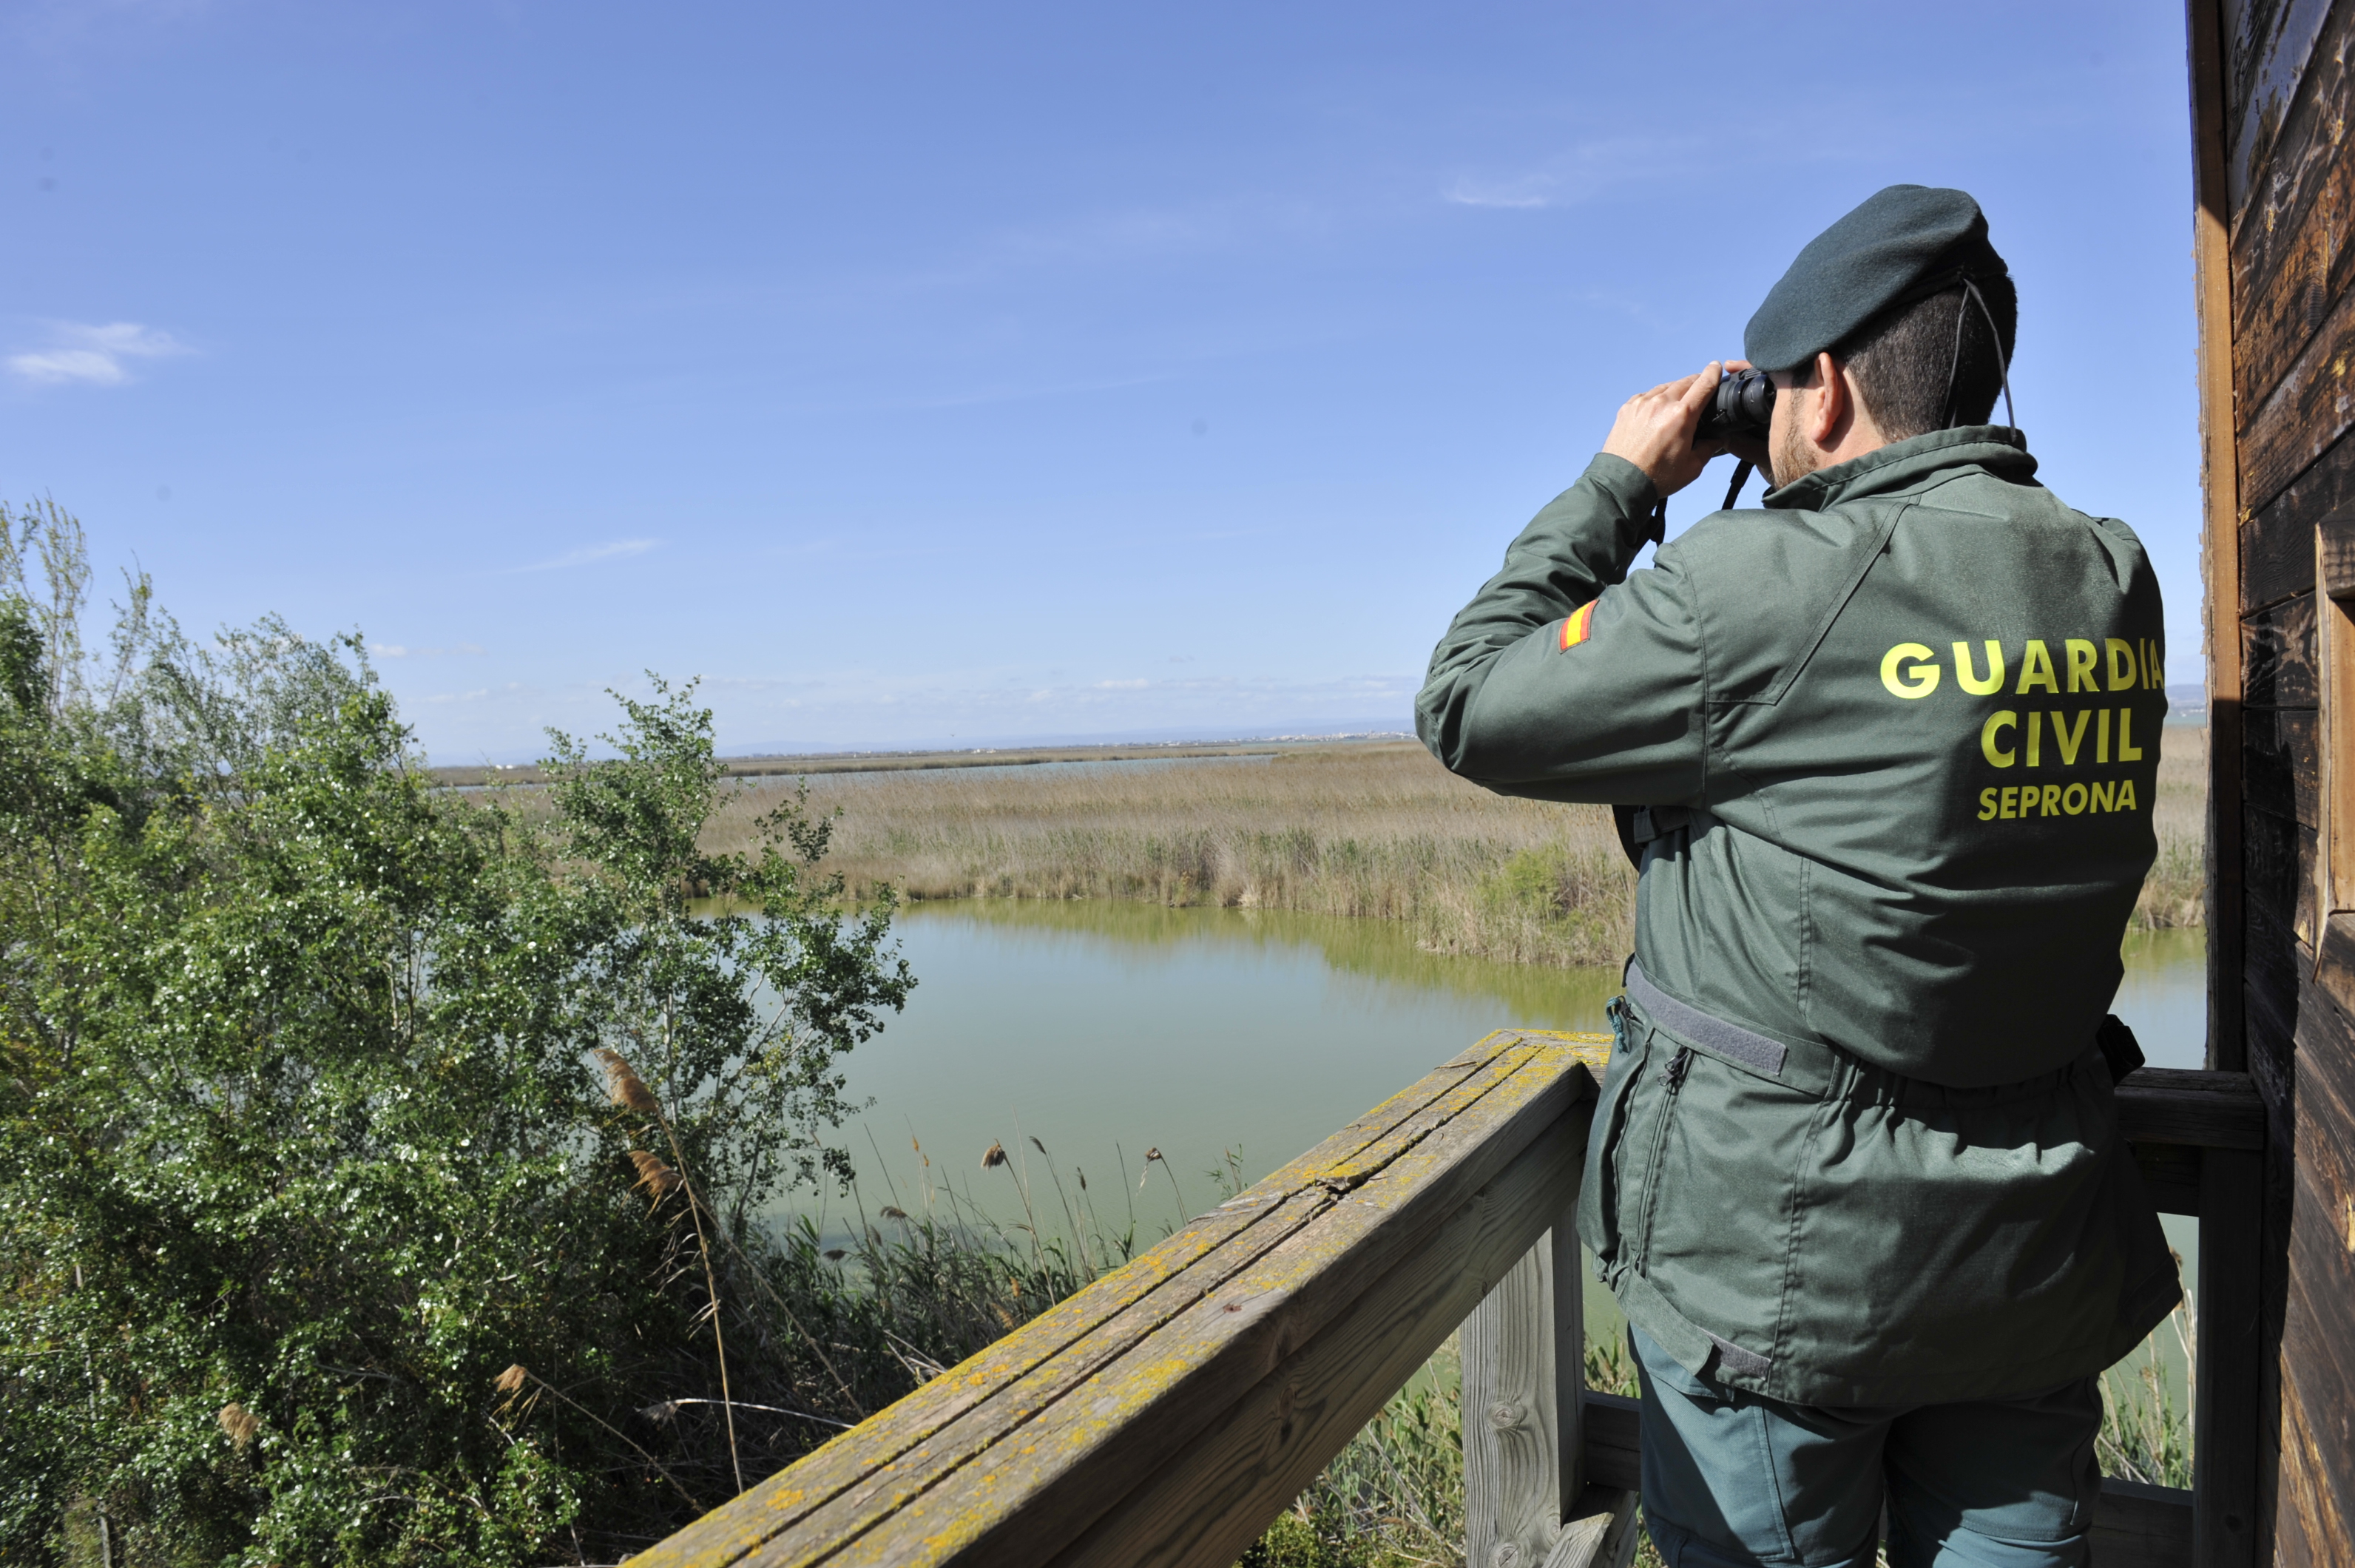 La Guardia Civil exhibe este año una tasa de esclarecimiento de más del 80% en delitos contra los recursos naturales y el medioambientes. Foto: Guardia Civil